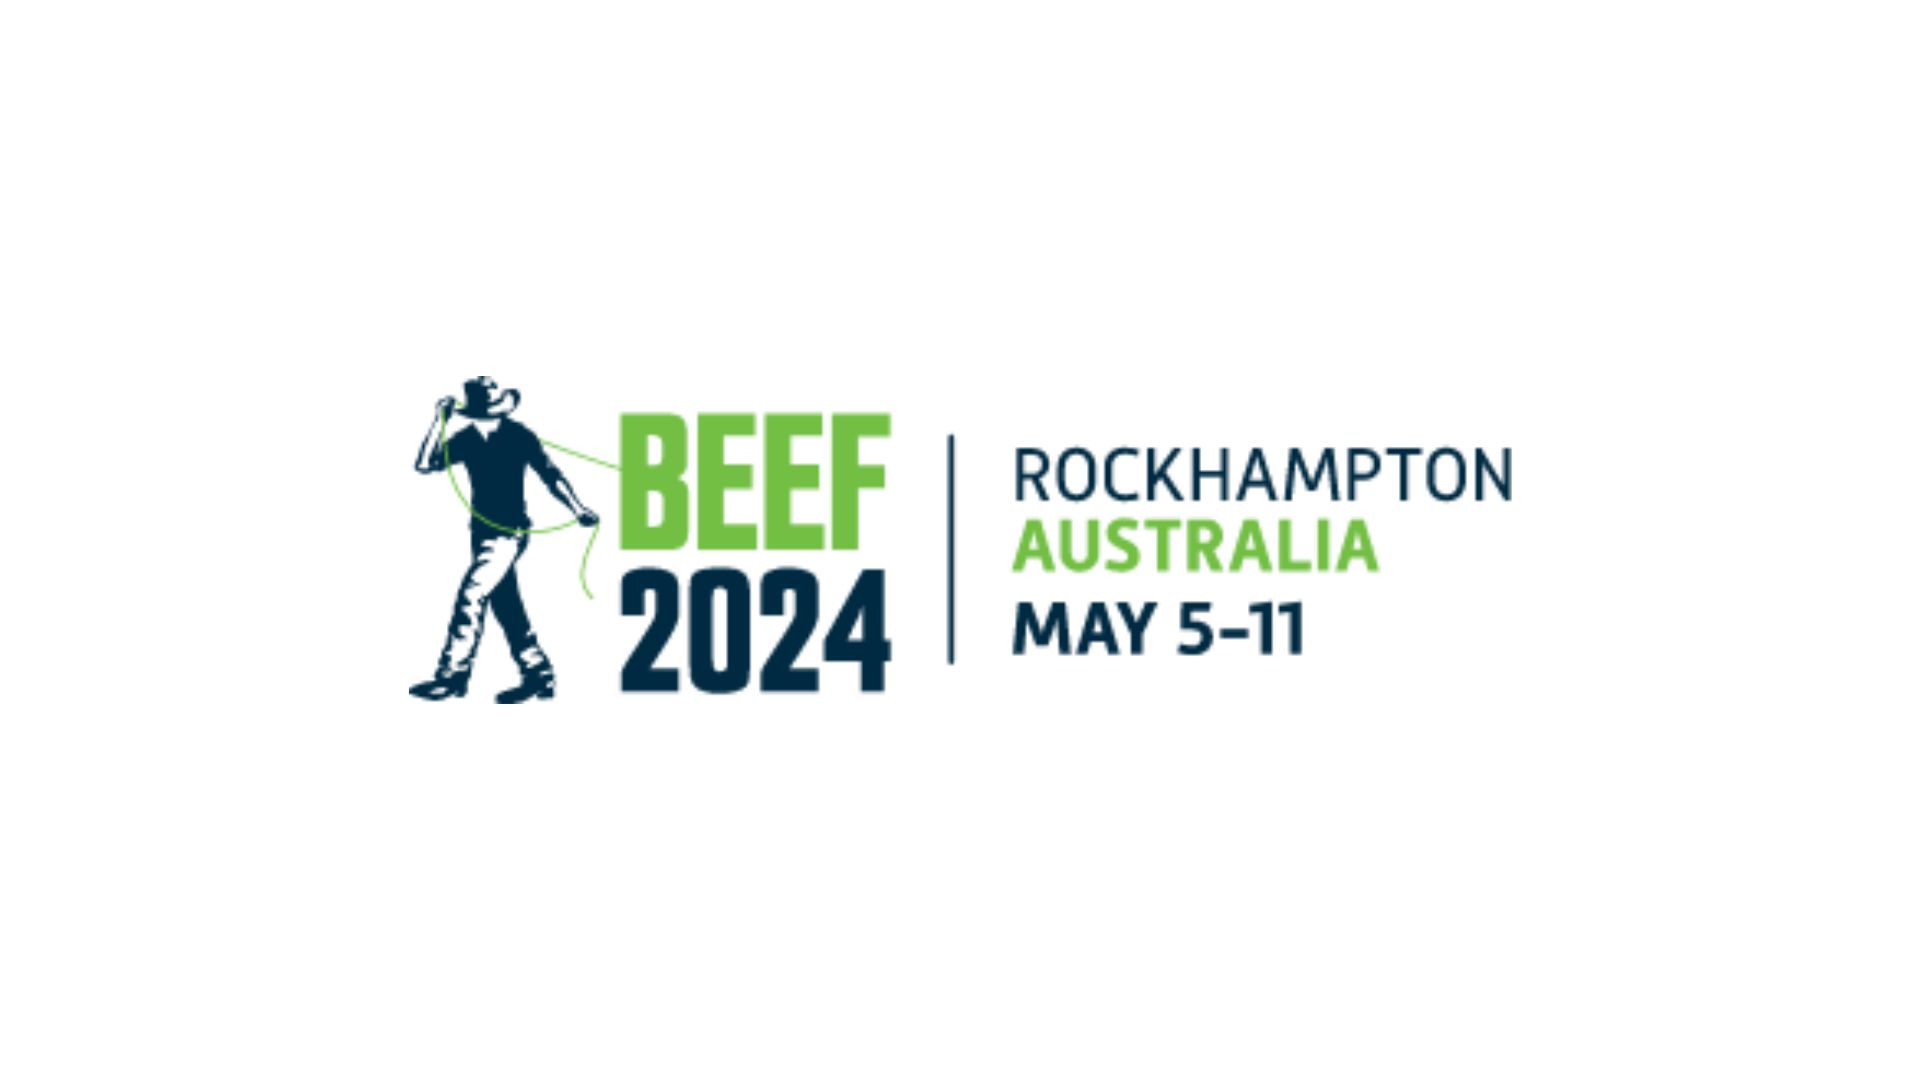 Beef Cattle Internships Summer 2024 trudy nicola